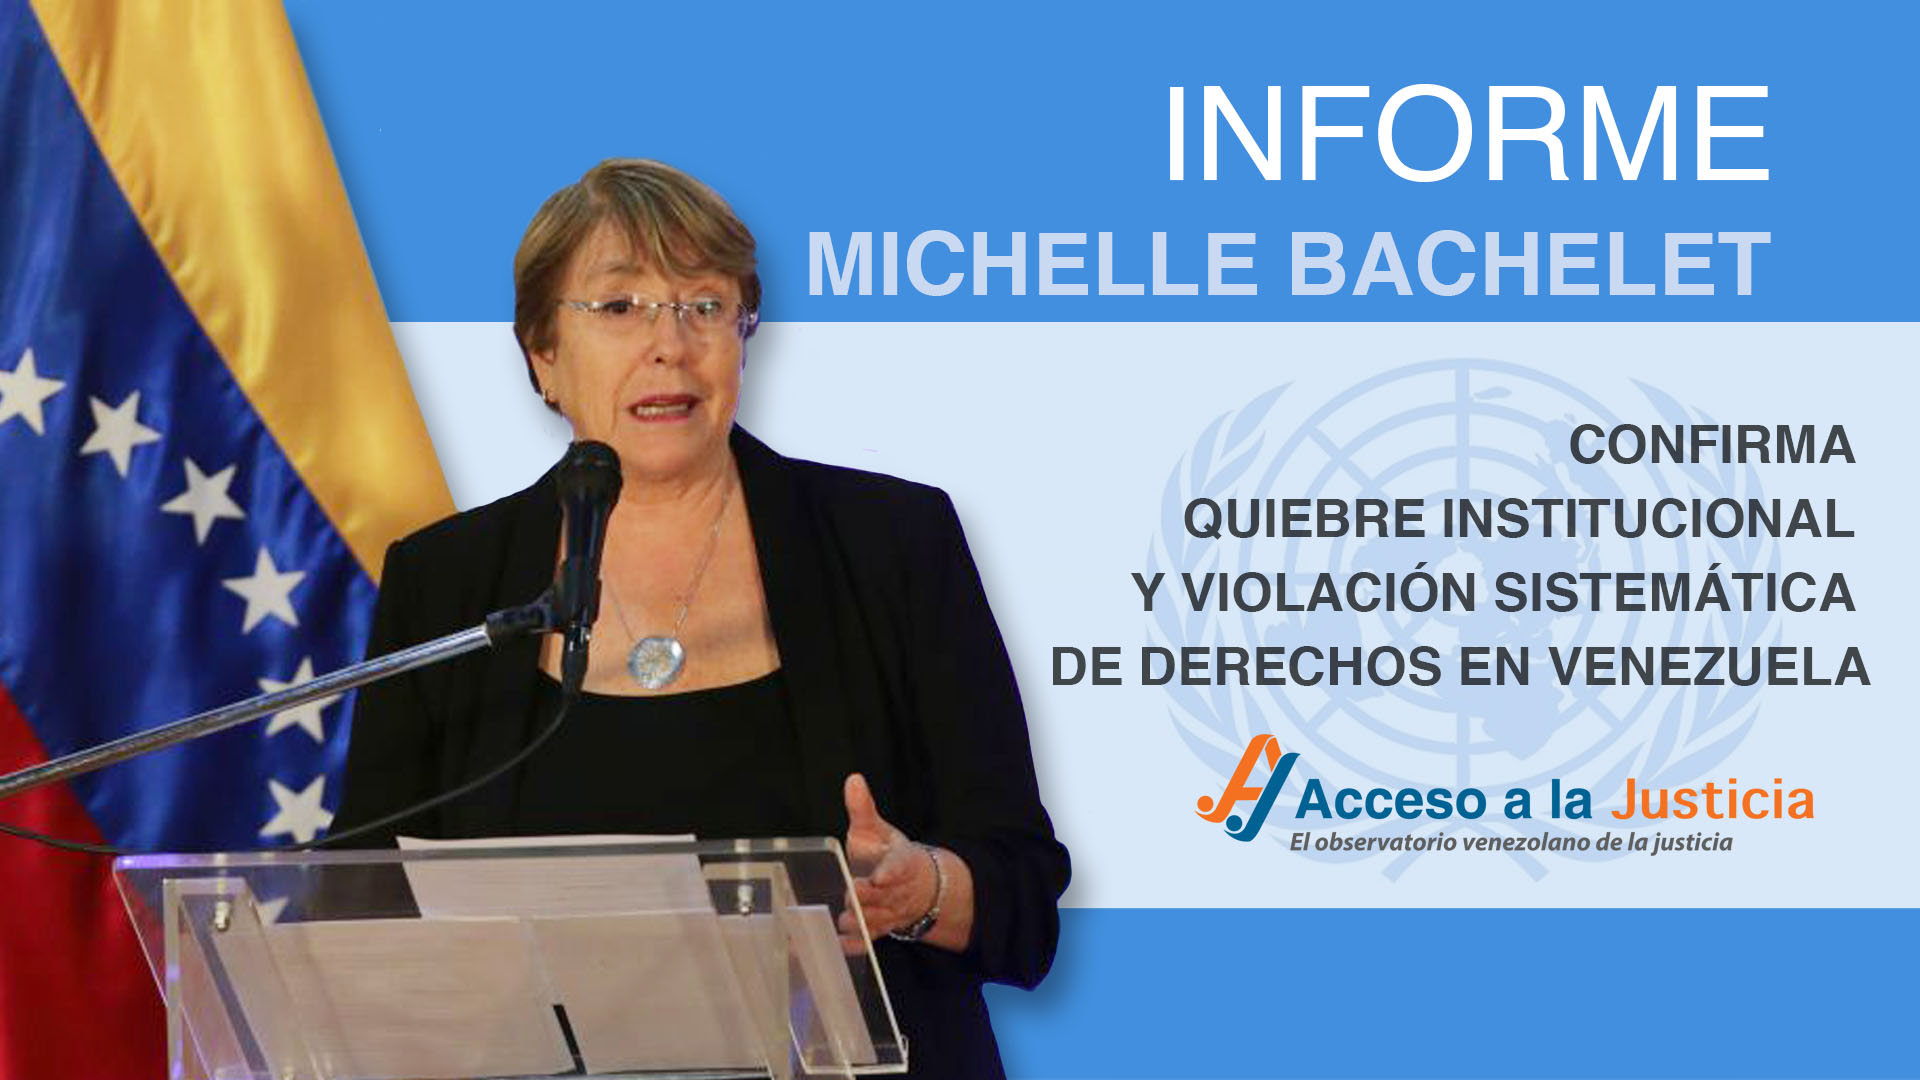 Informe Bachelet confirma quiebre institucional y violación sistemática de derechos en Venezuela